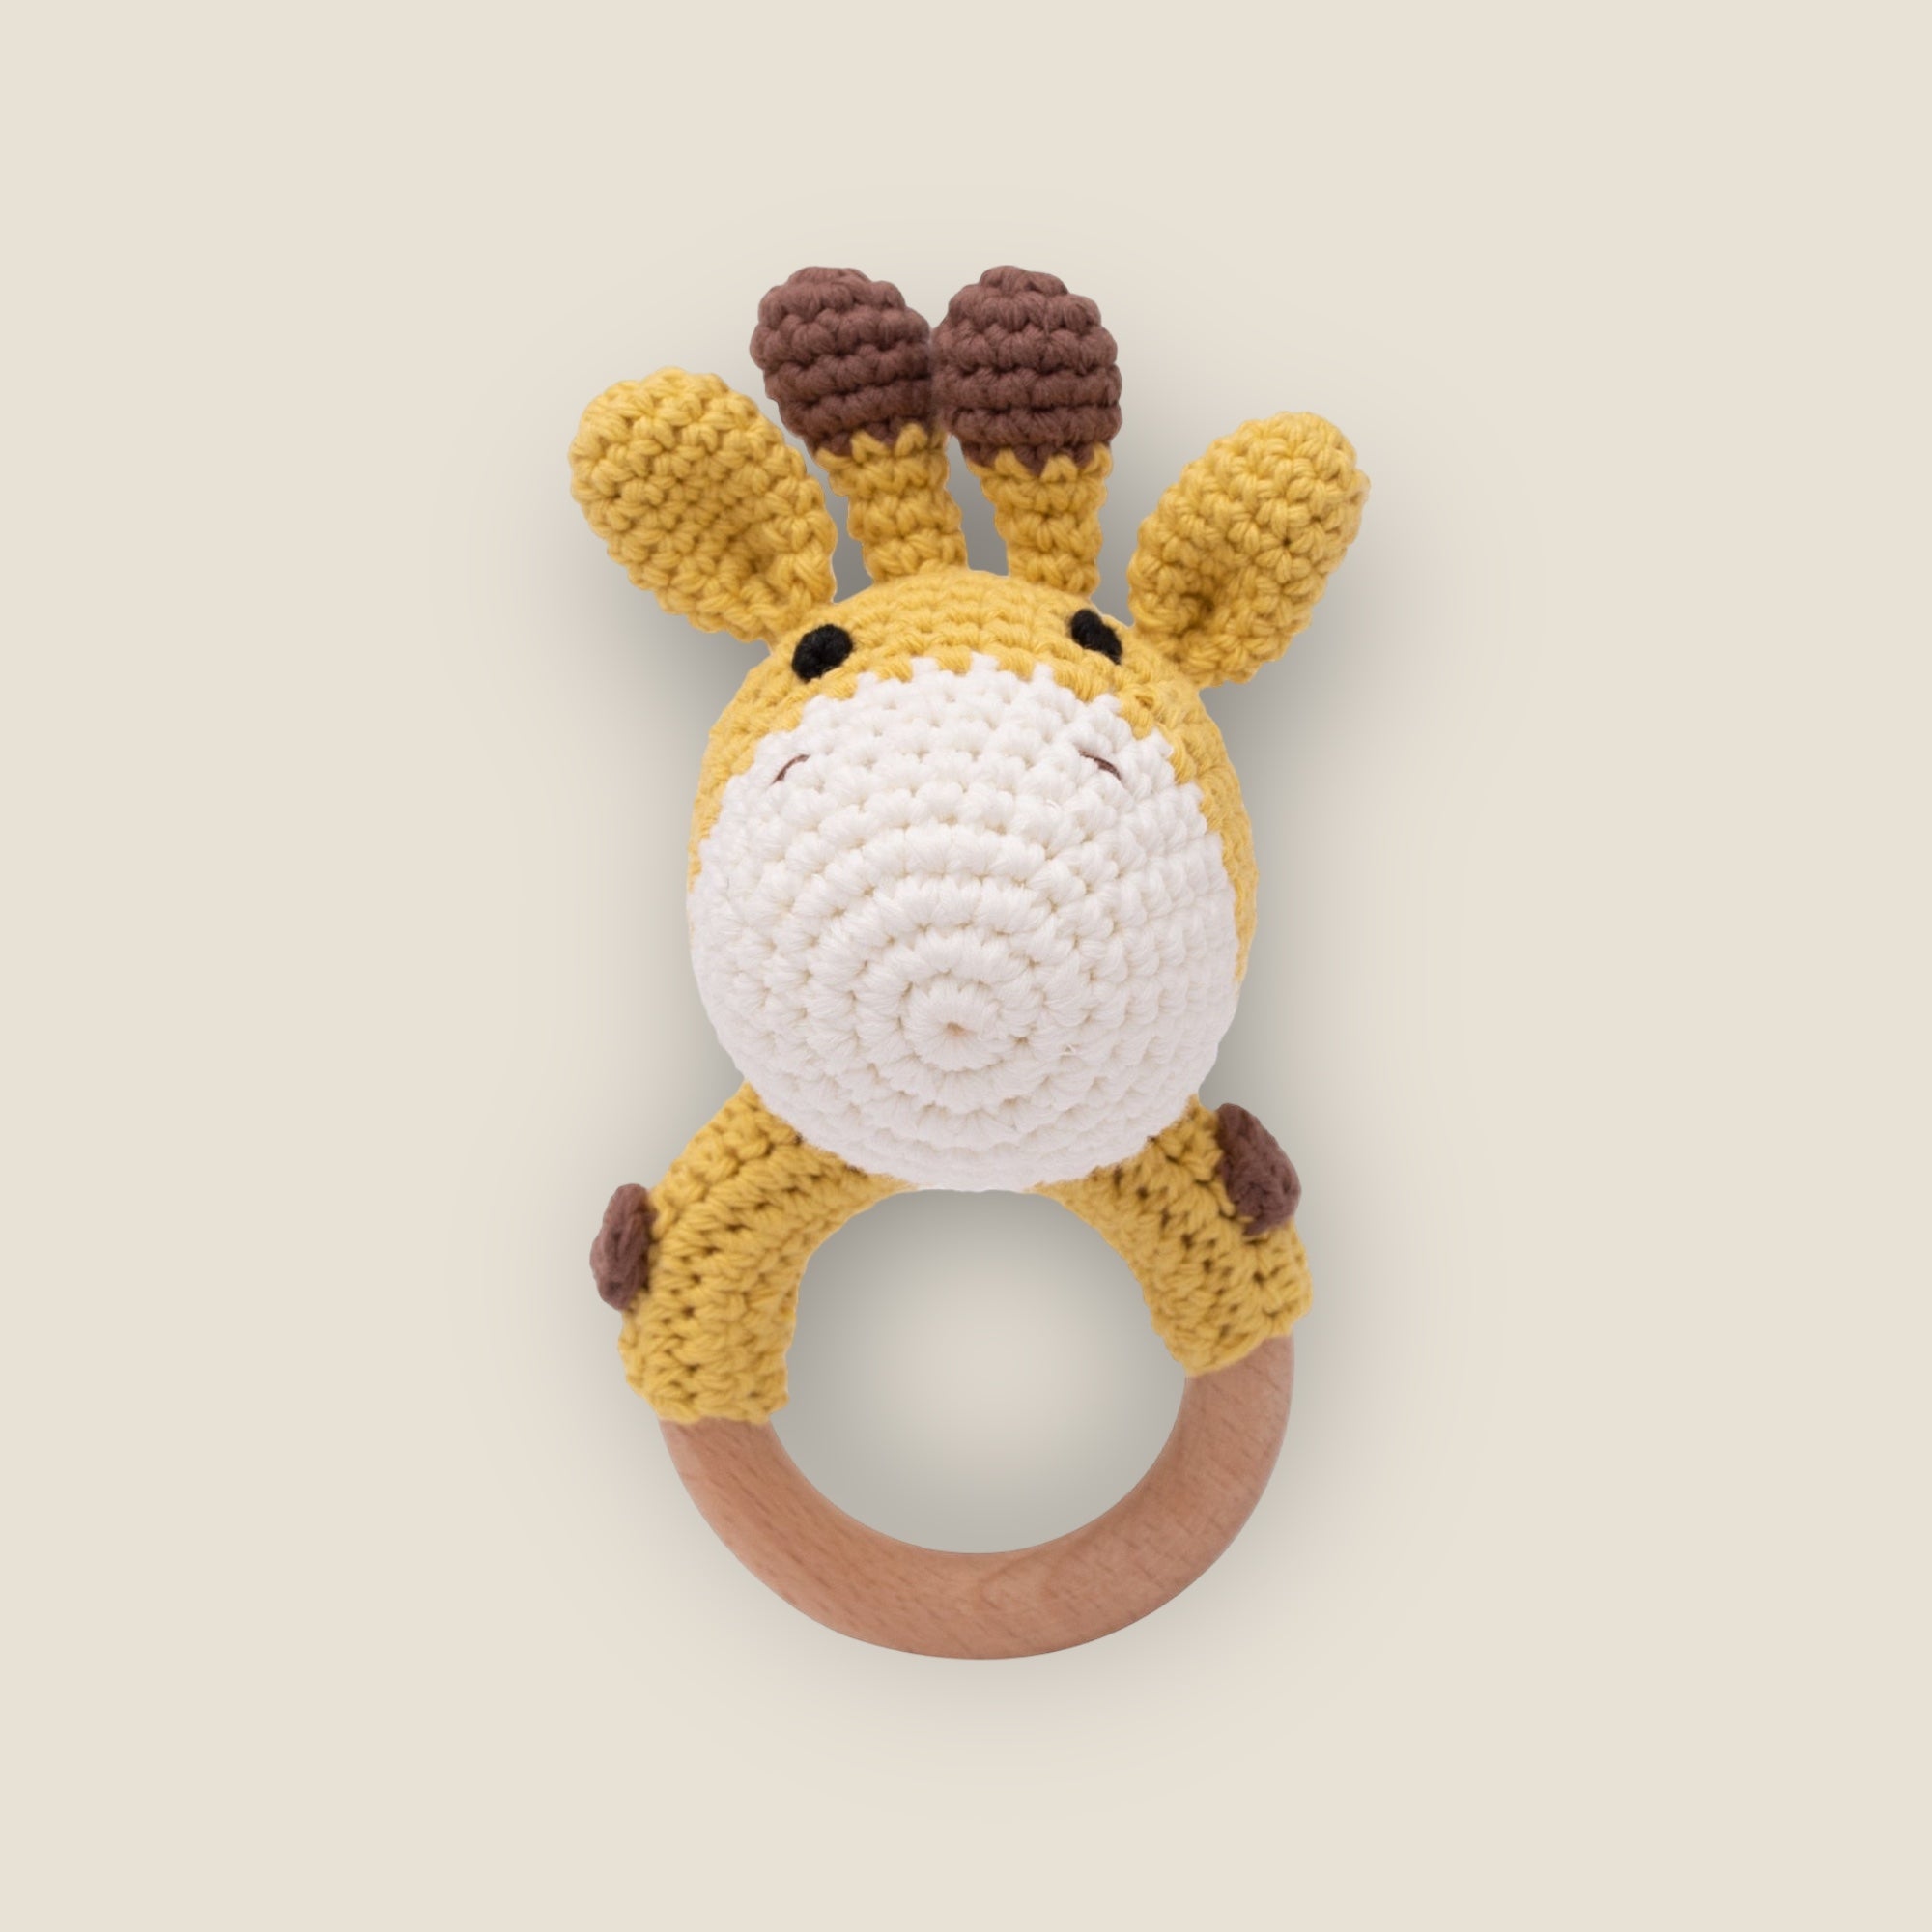 Gerald the Giraffe | Crochet Baby Rattle